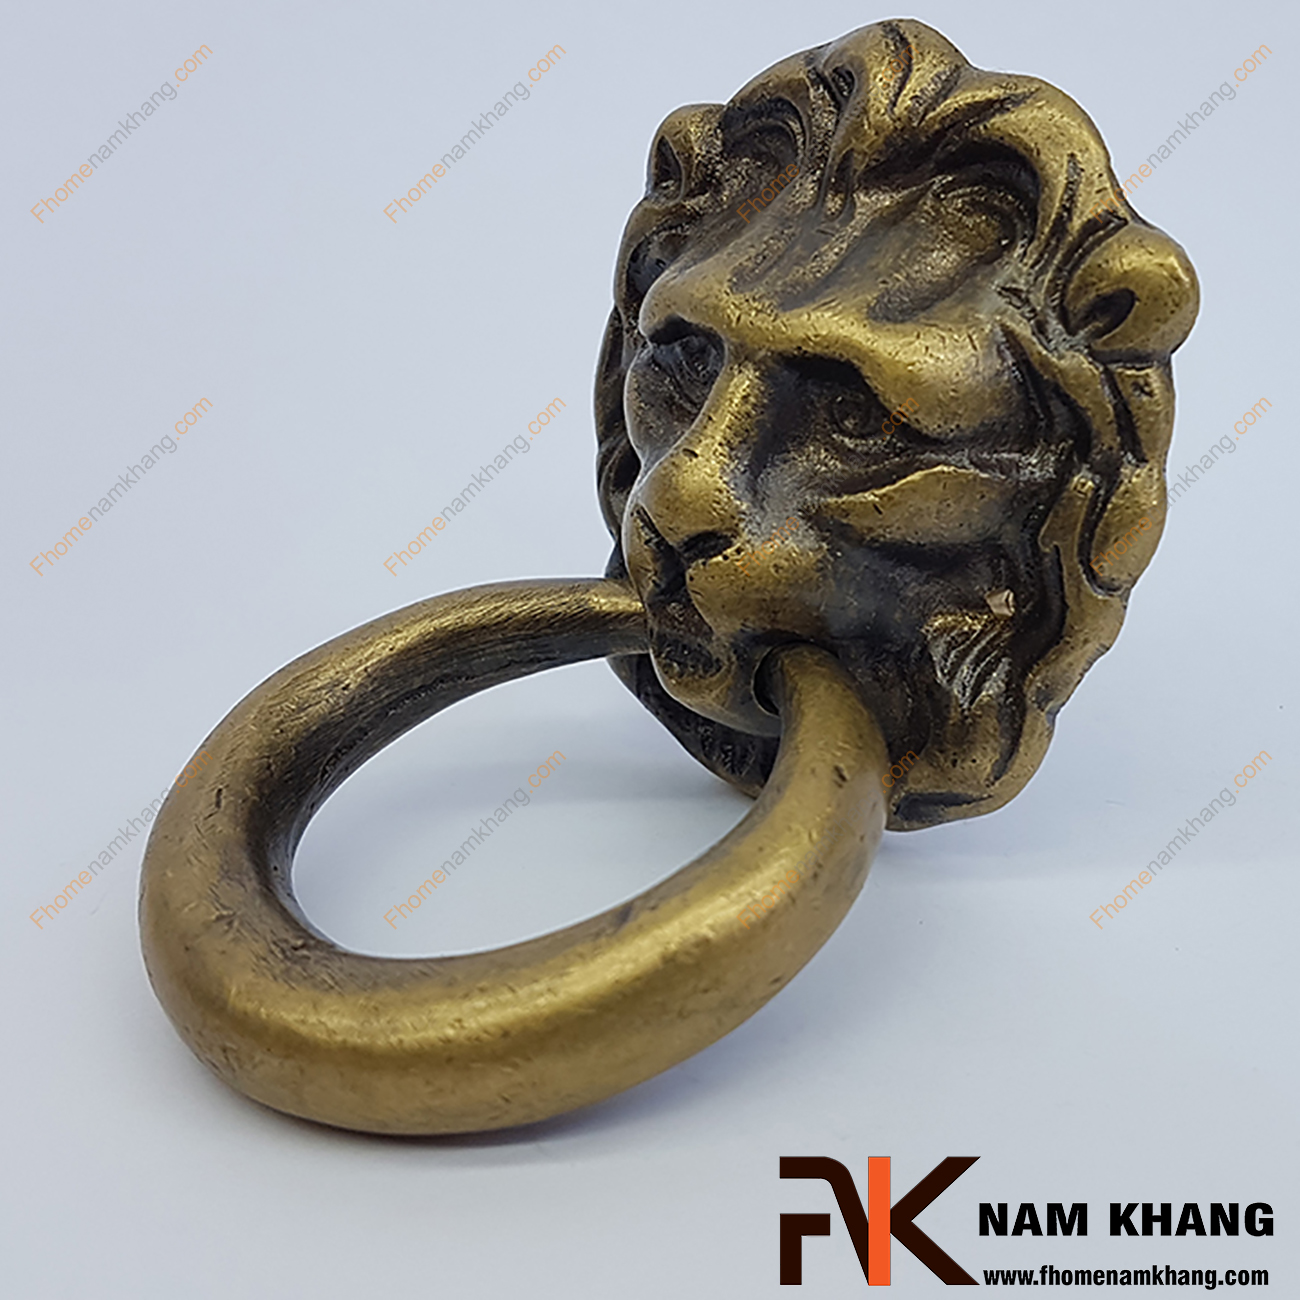 Núm đồng đầu sư tử NKD042 là một sản phẩm nội thất được chế tạo lấy cảm hứng từ sự uy quyền của loài sư tử dũng mãnh